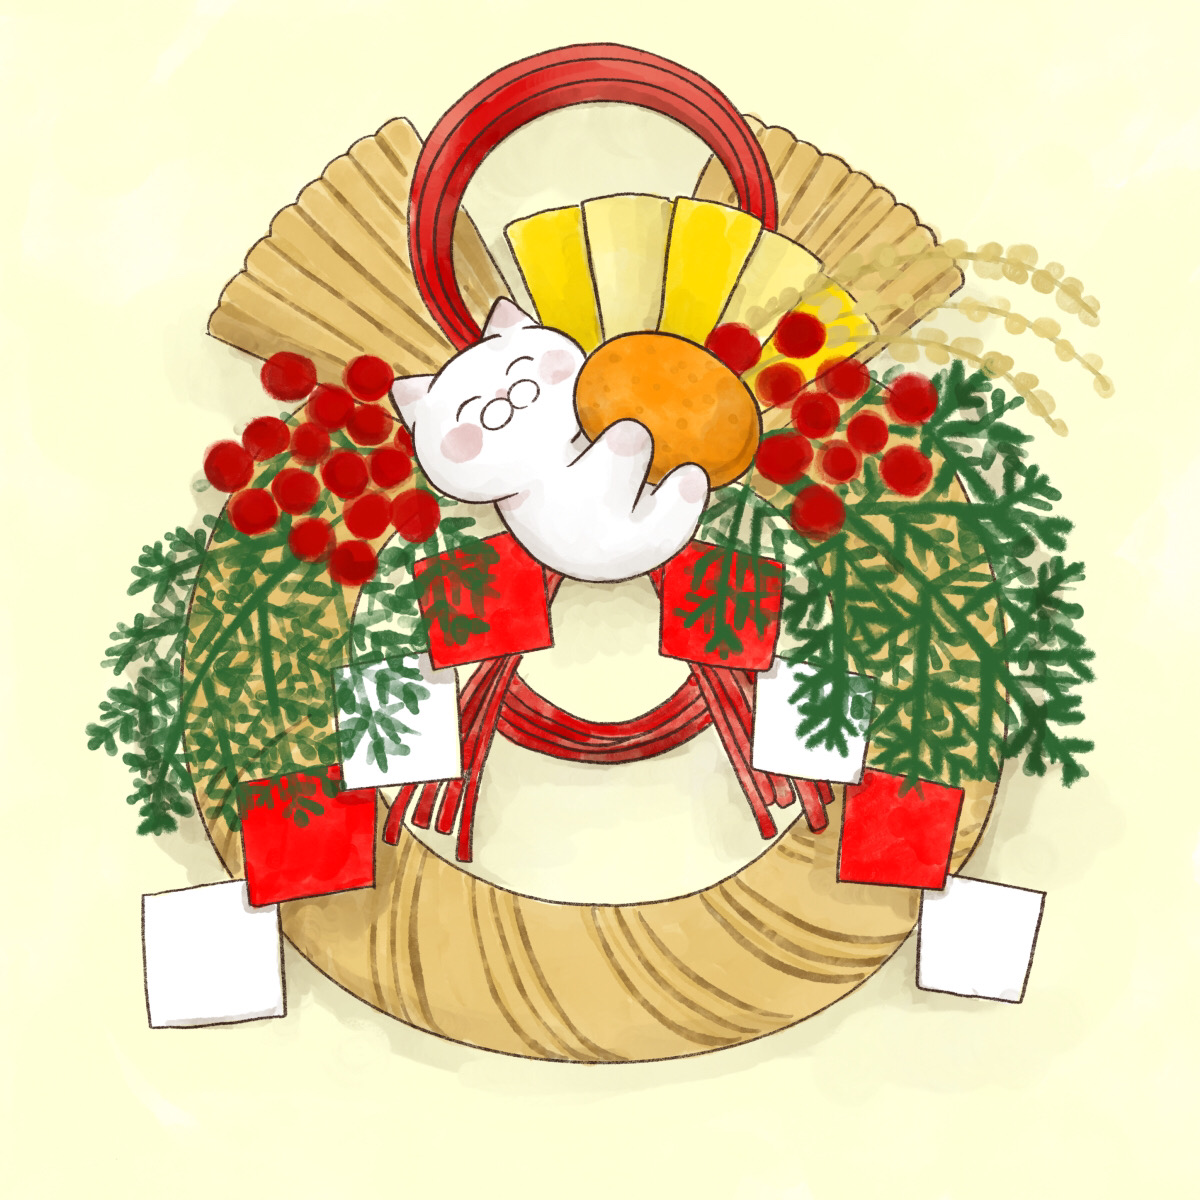 「【今日まで】  しめ飾り、松飾り、門松は12月28日までに飾る。 29日は「二重」|大和猫のイラスト